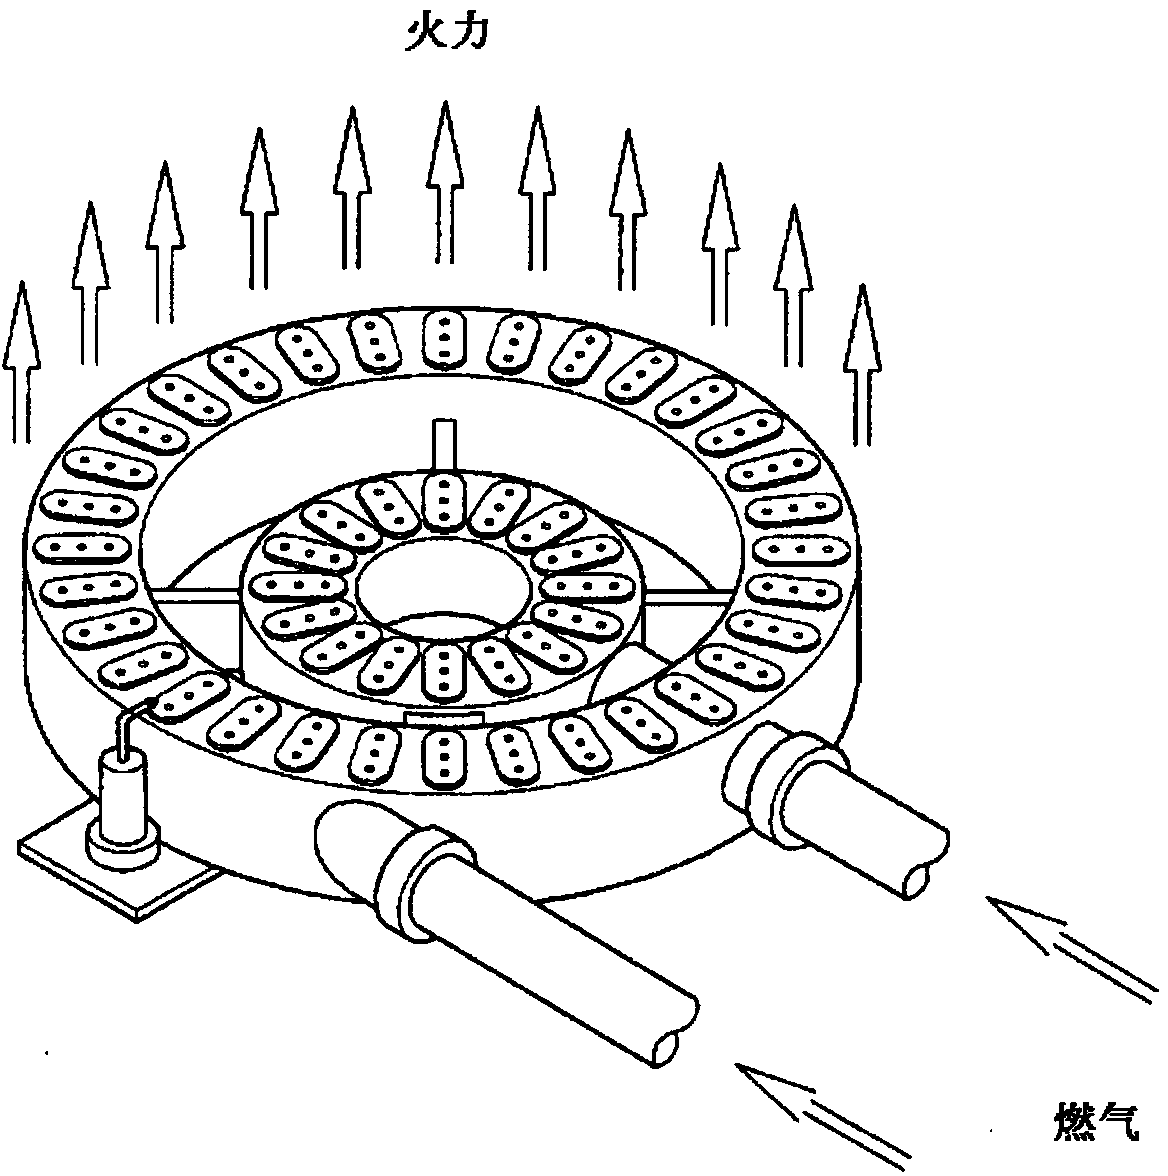 Fan-metal fiber gas burner